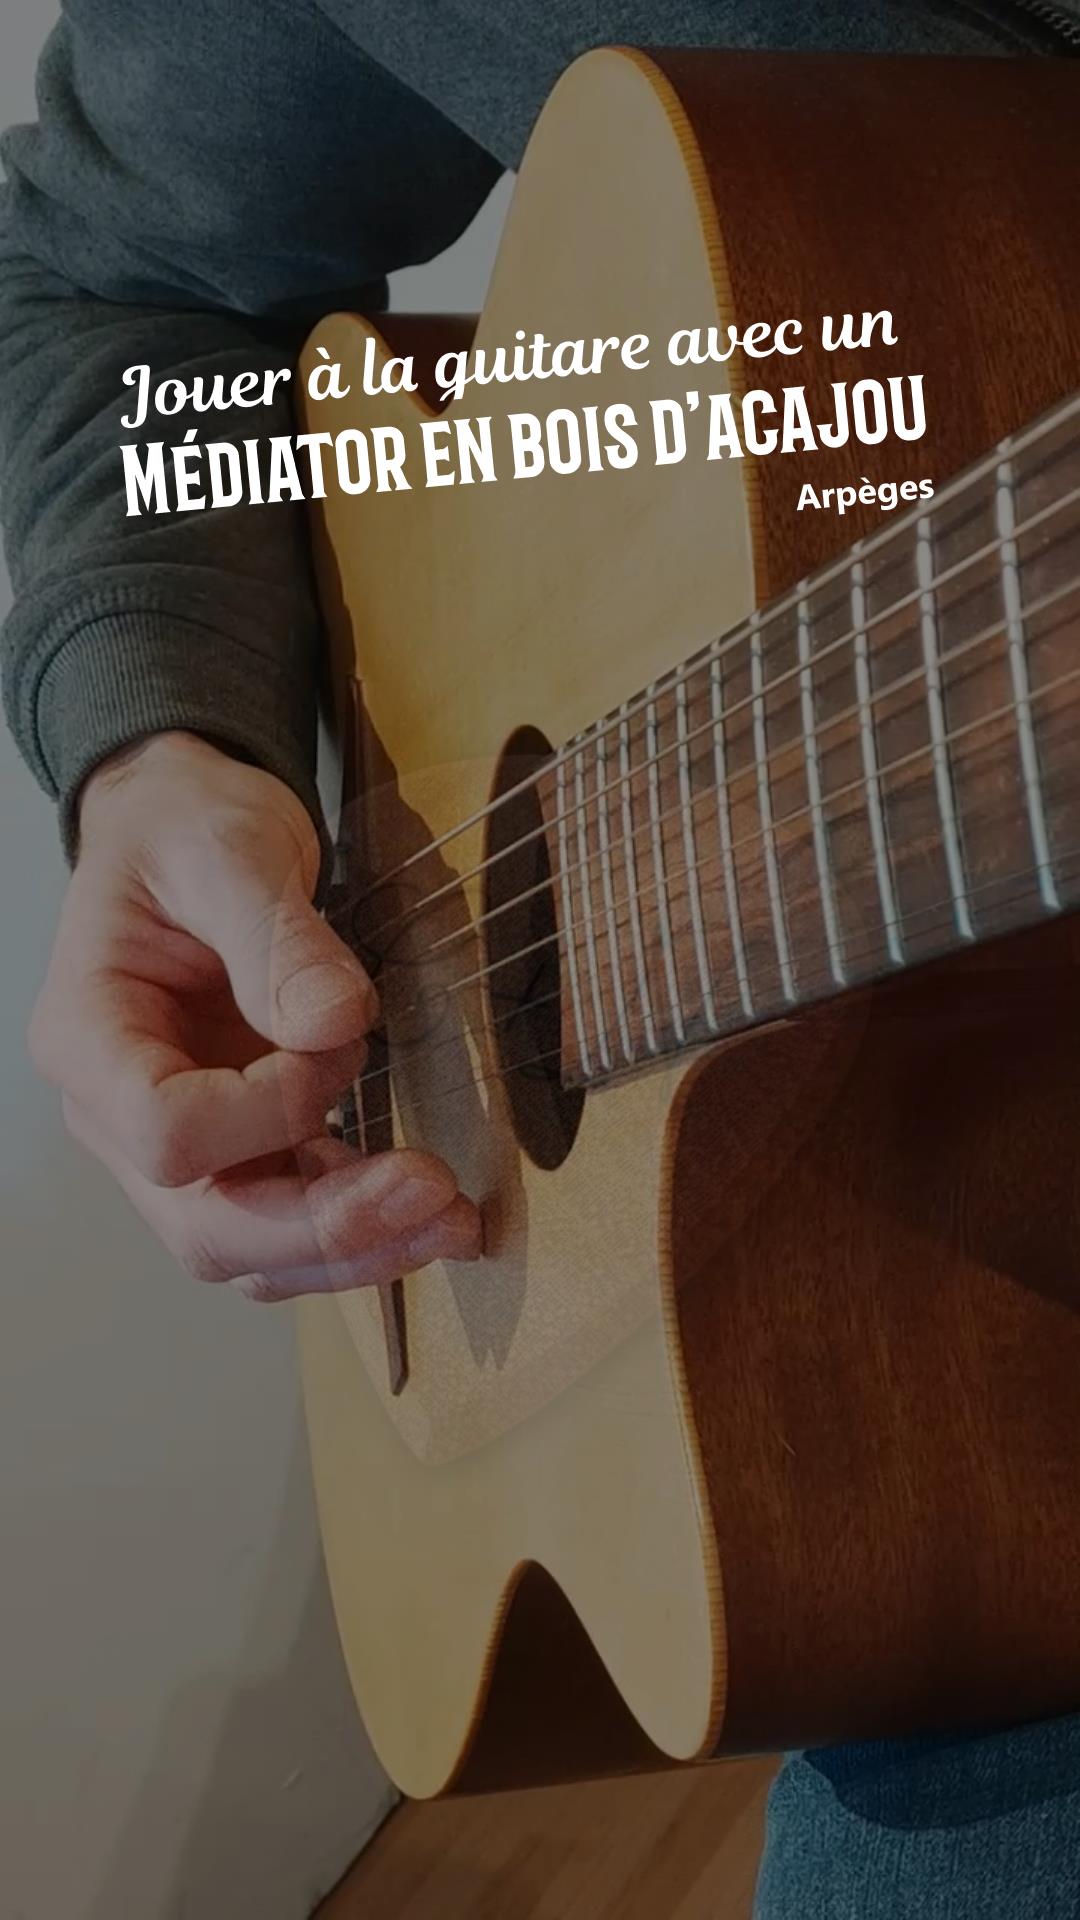 Porte médiator, support pour guitare